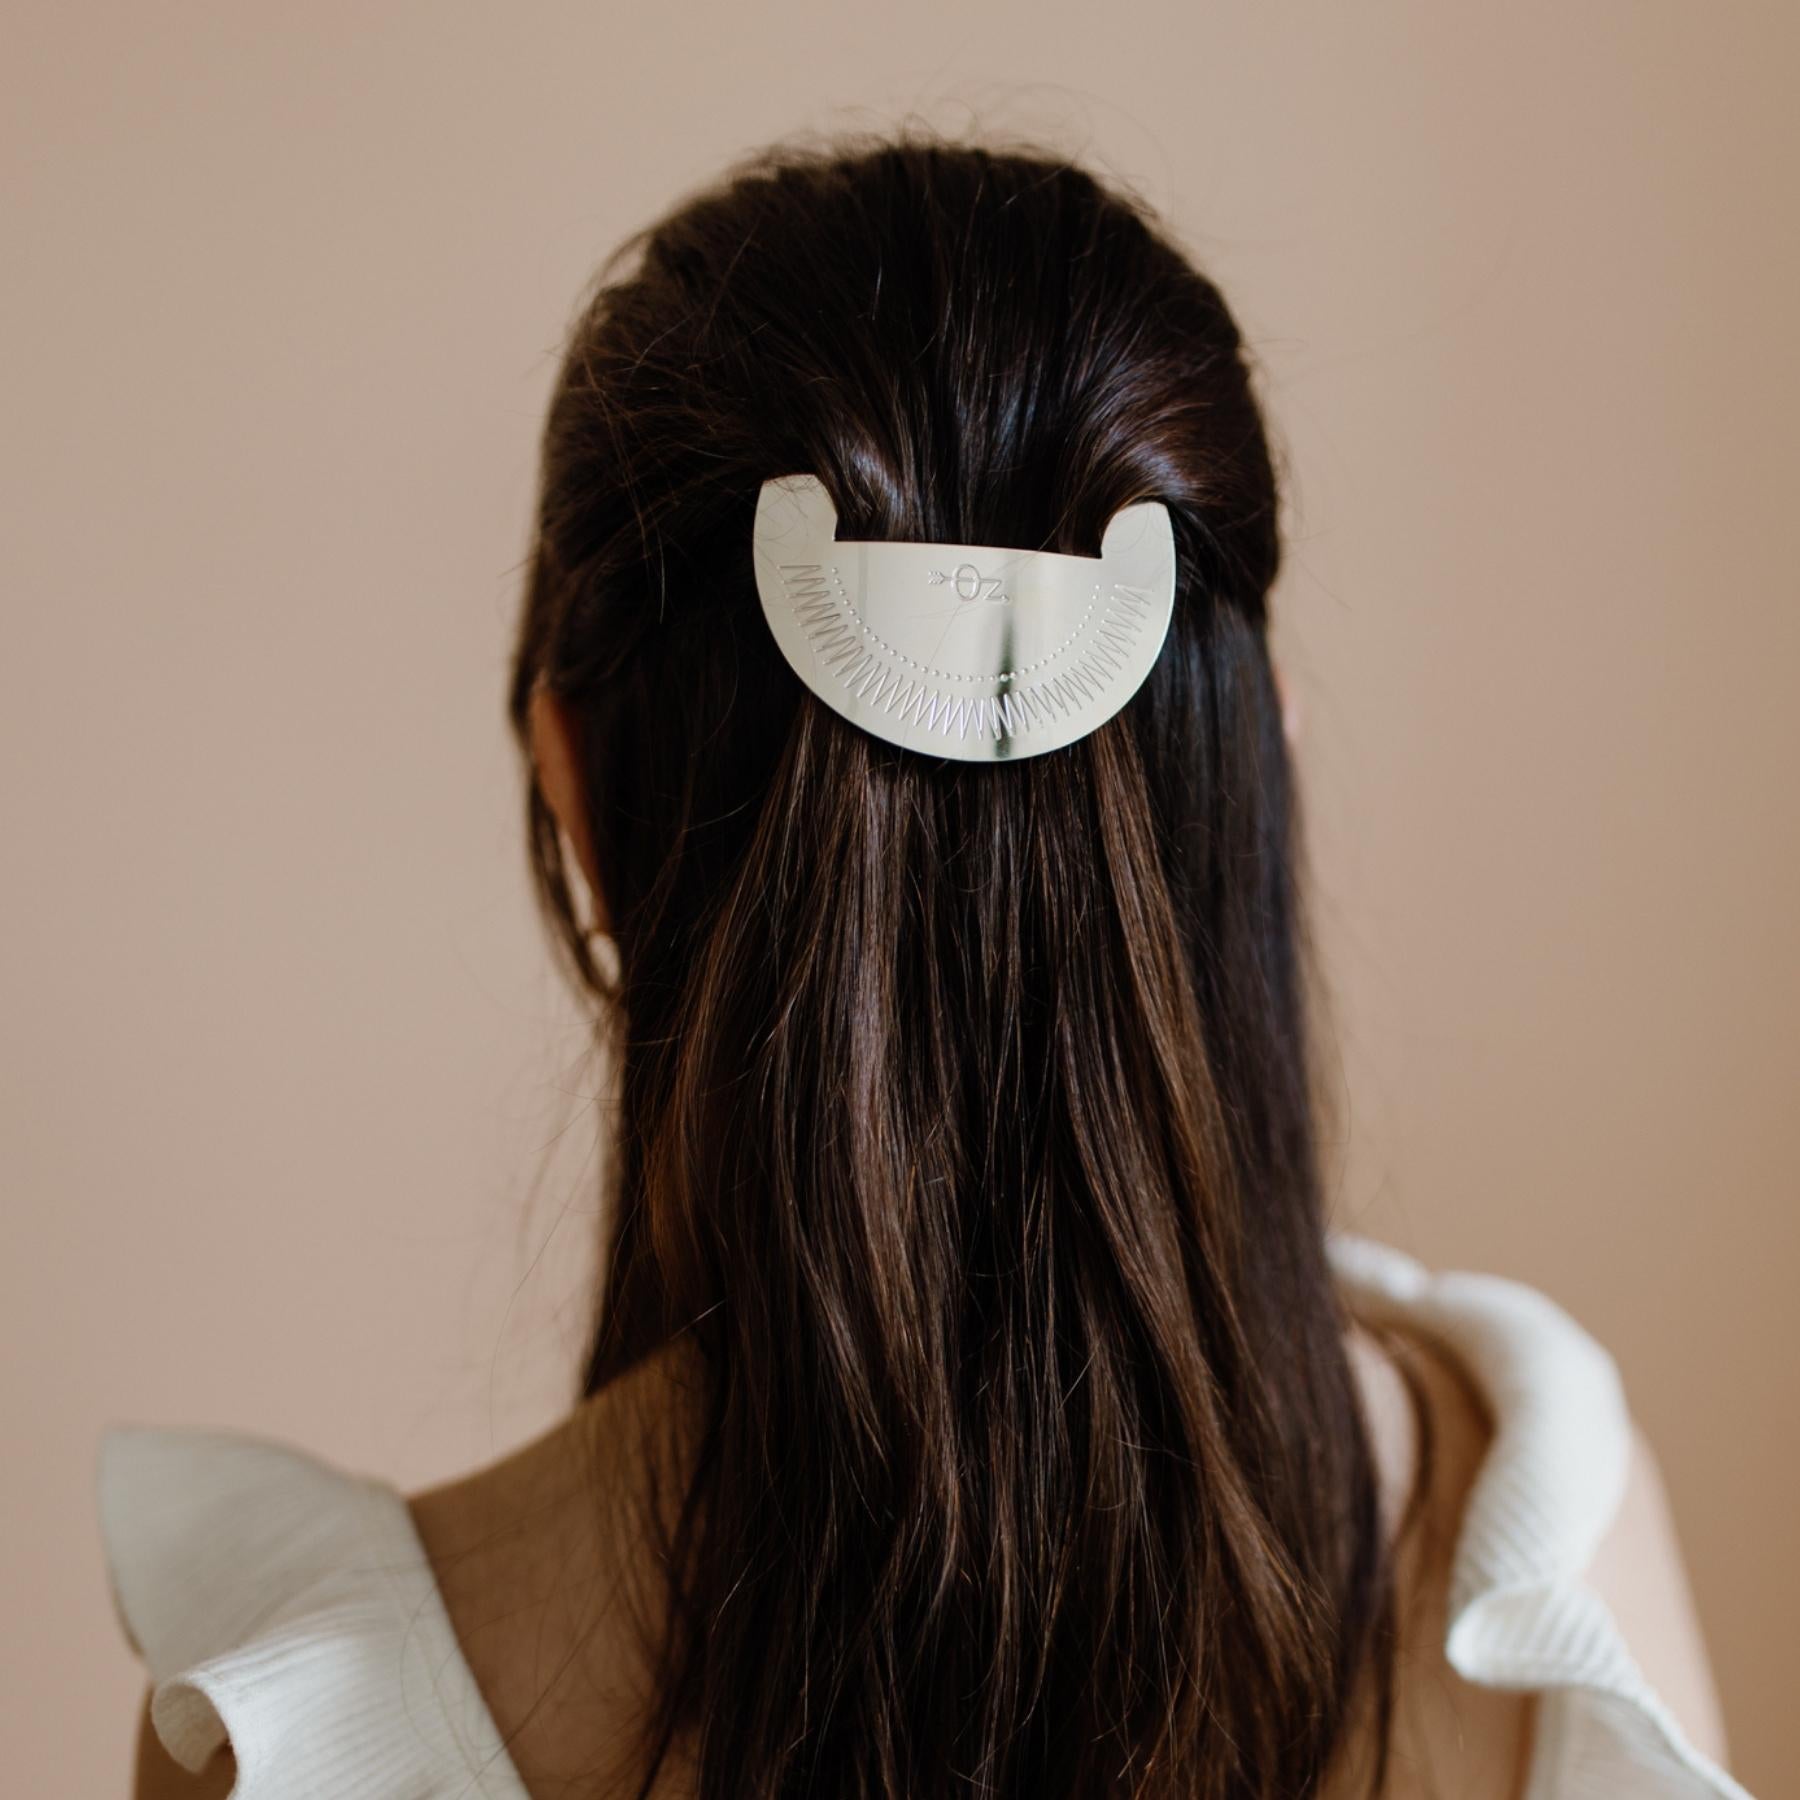 Femme aux cheveux longs portant une barrette ronde argentée